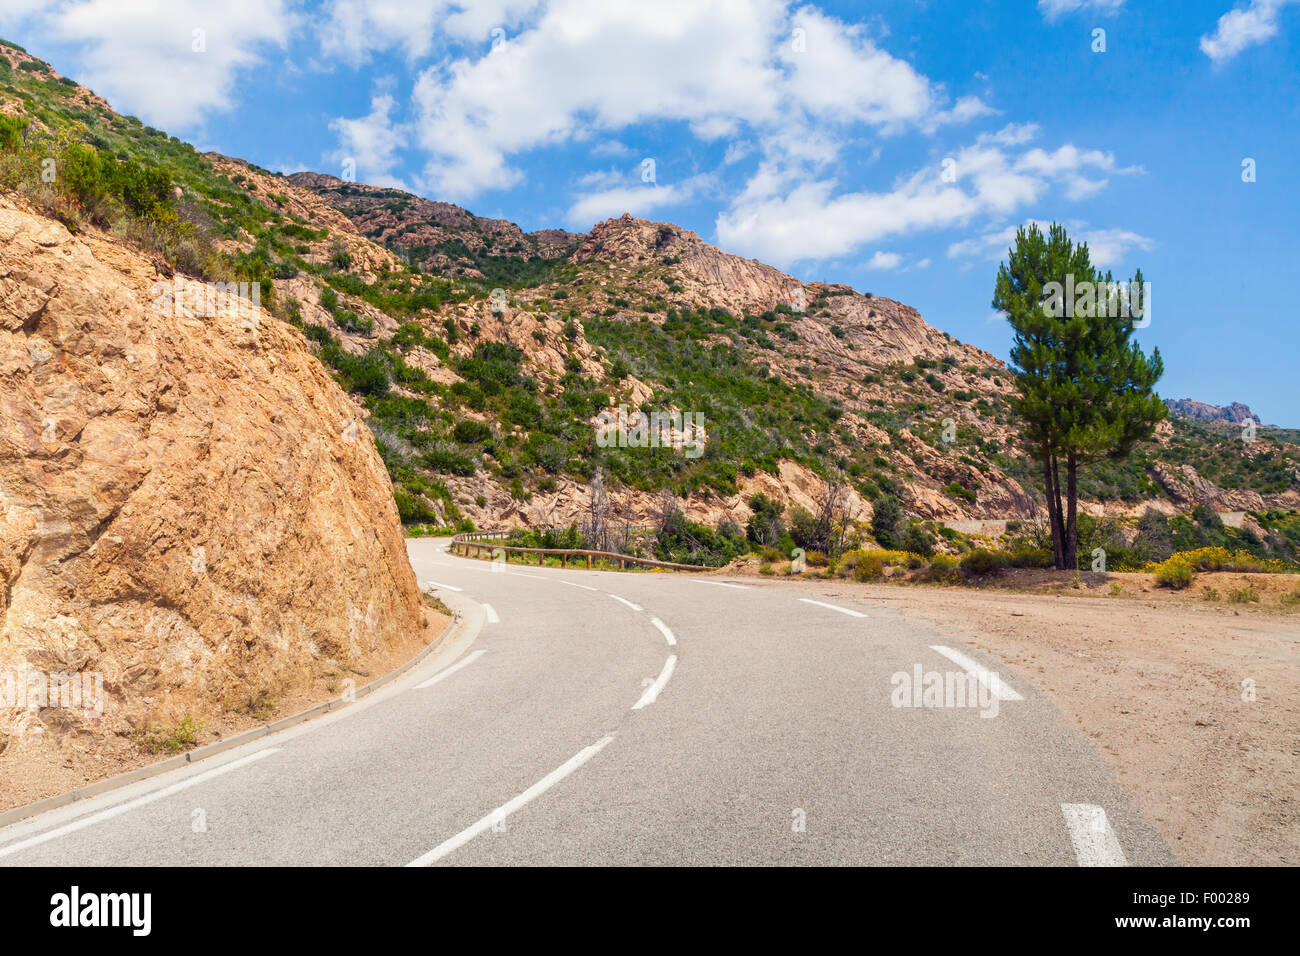 Girando su strada di montagna con una linea di demarcazione su asfalto, Corsica, Francia Foto Stock